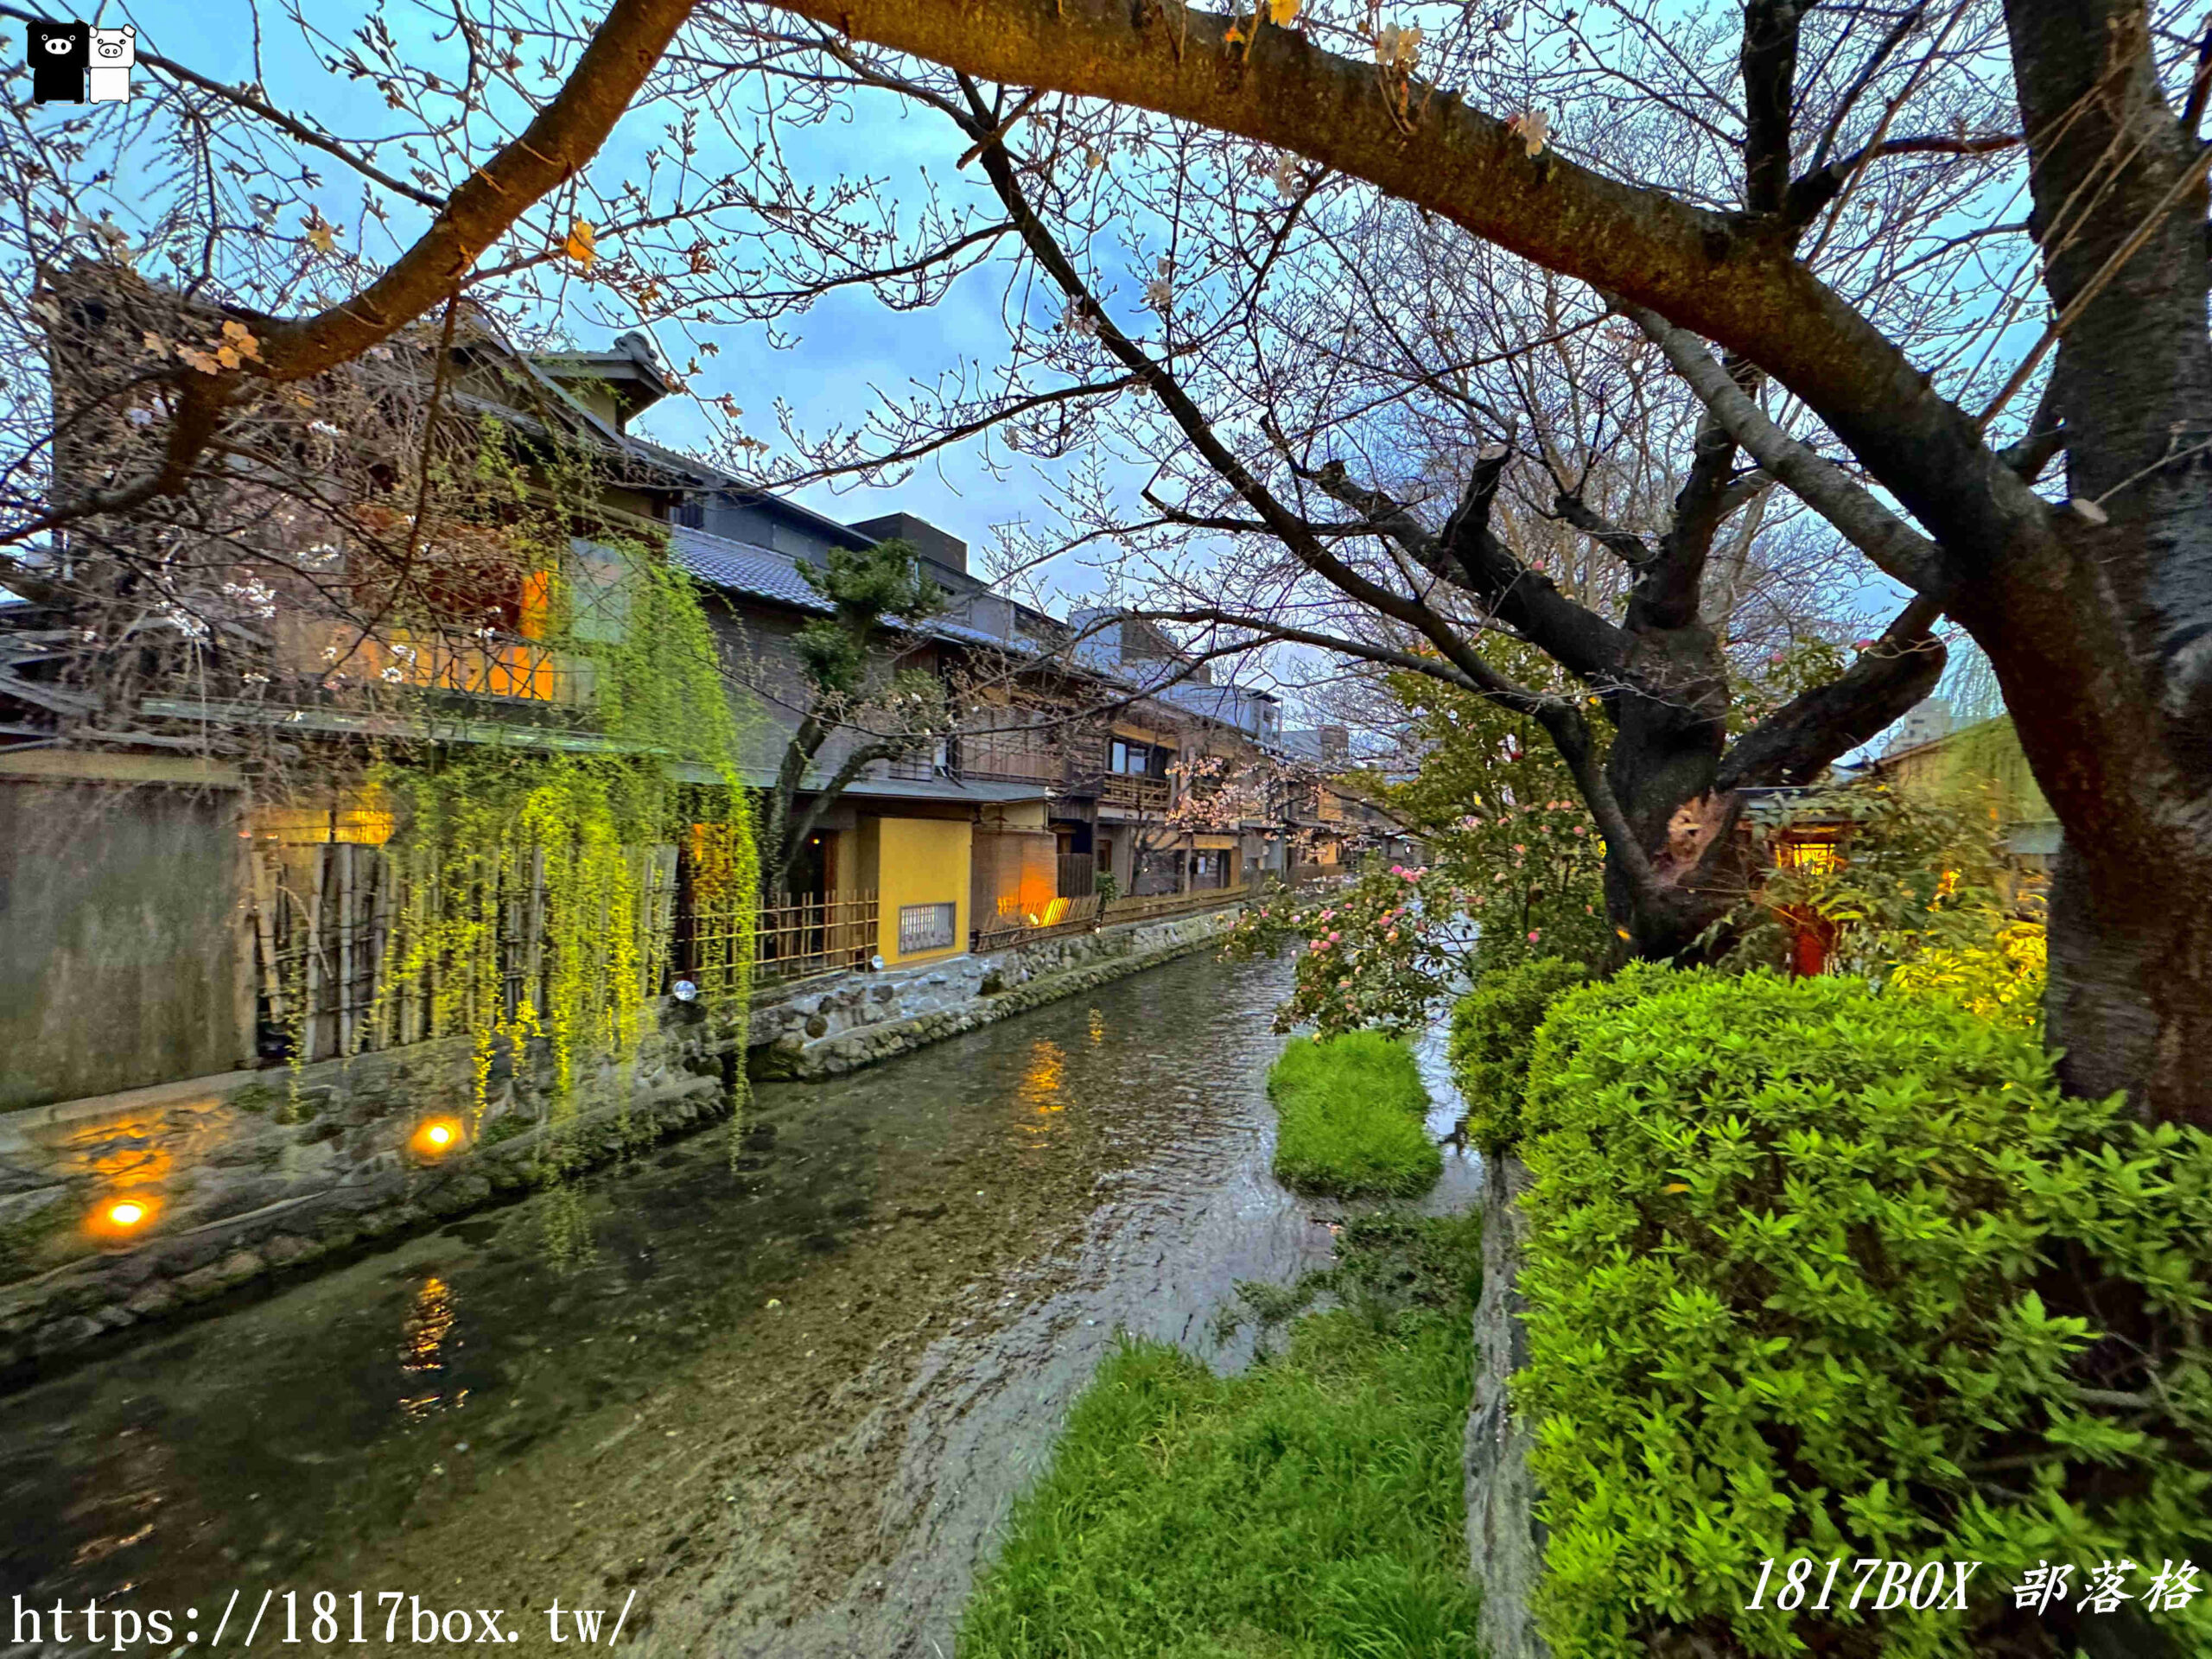 即時熱門文章：【京都景點】祇園白川筋。小橋流水。古色古香的町家建築